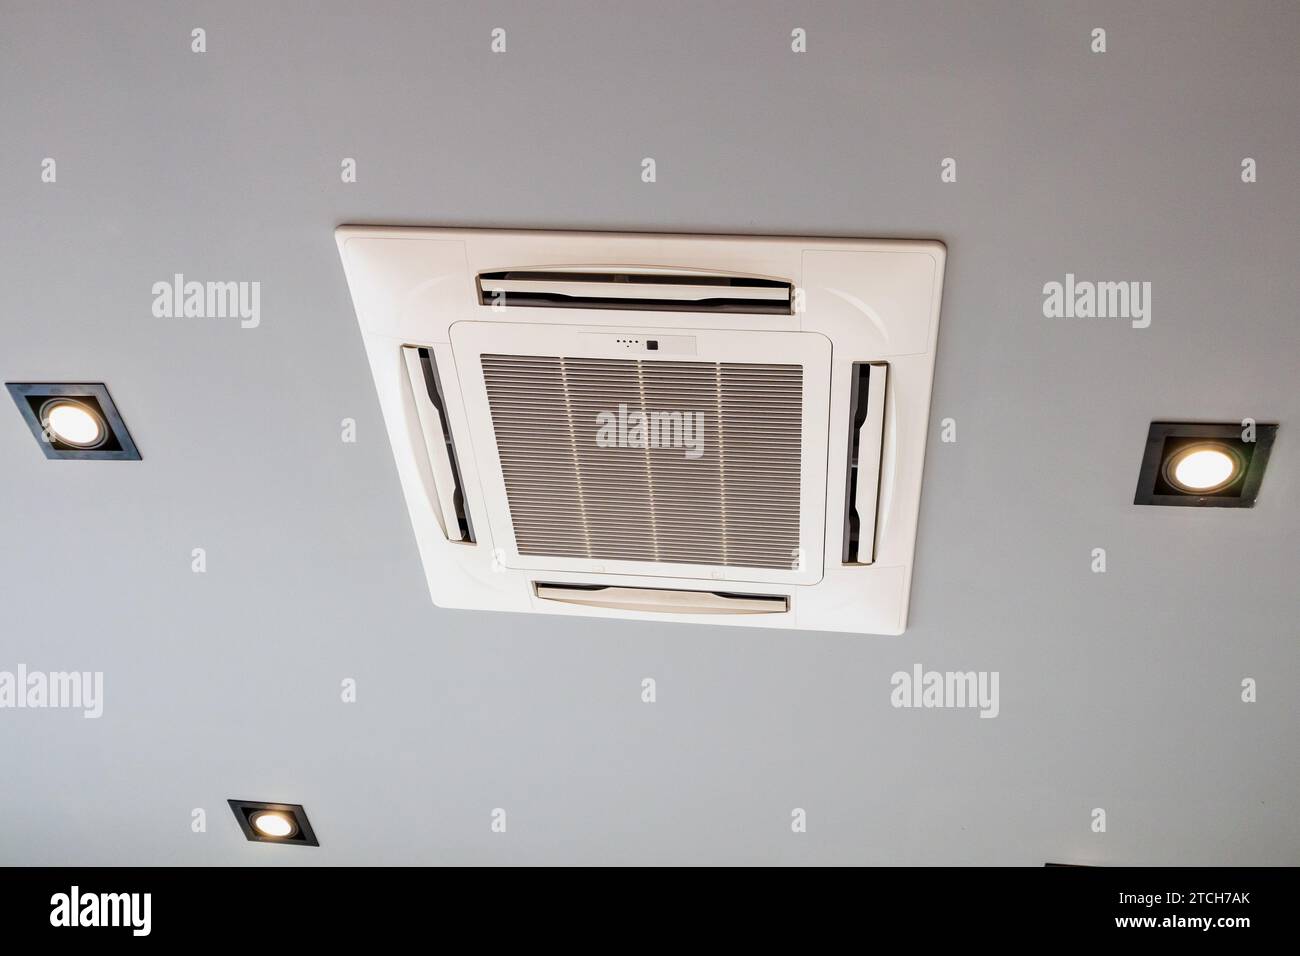 Moderno impianto di climatizzazione a cassetta montato a soffitto Foto Stock